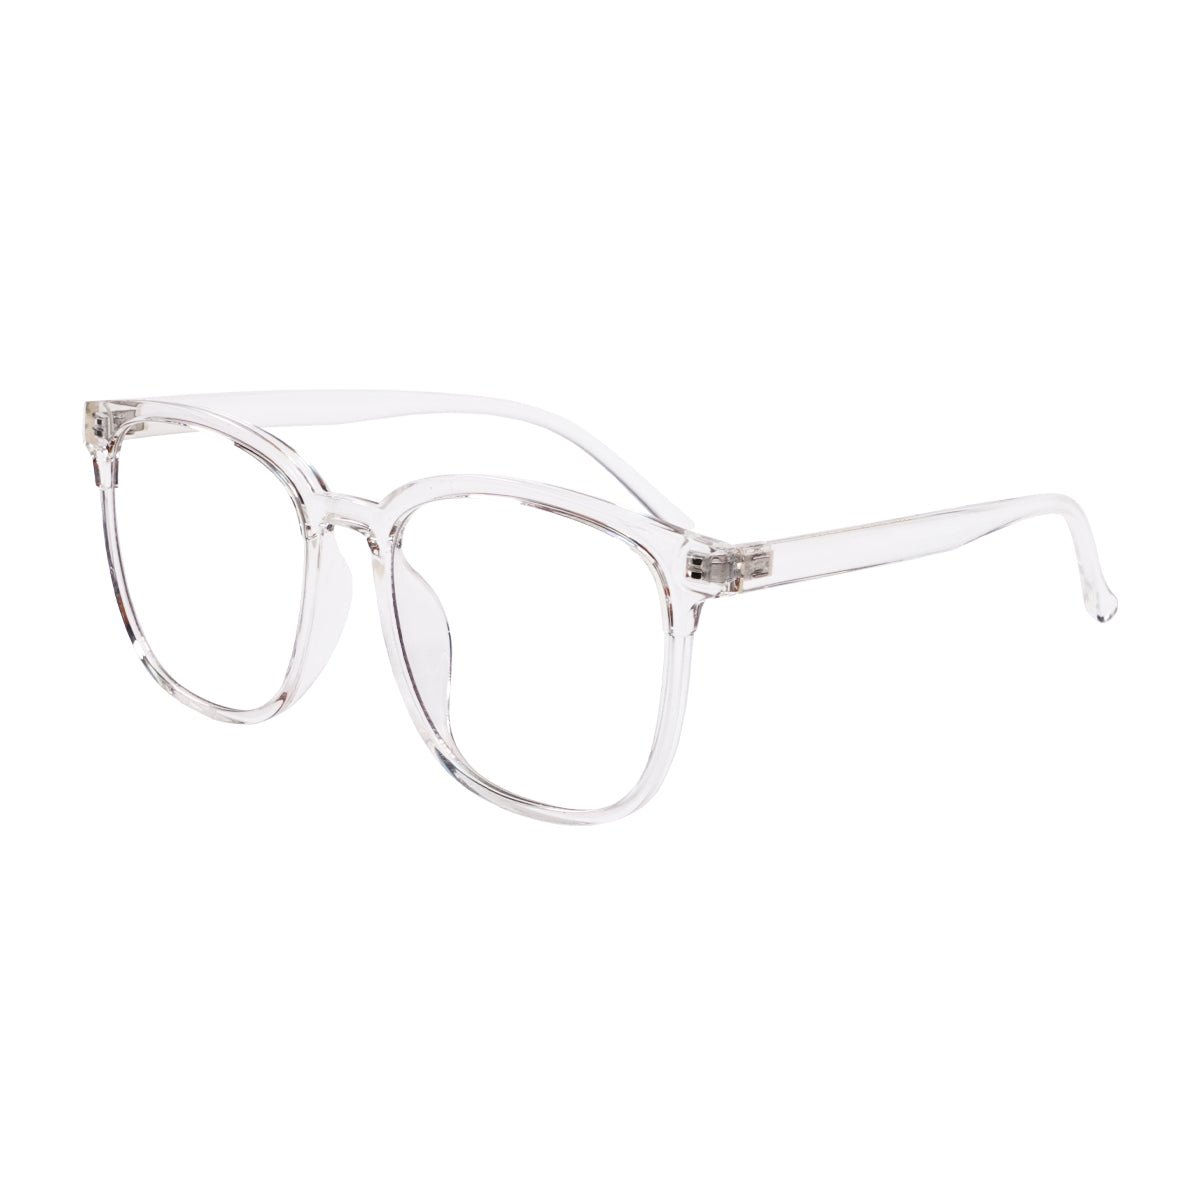 Epic Gamers Glasses V1 - Transparent White - Store 974 | ستور ٩٧٤